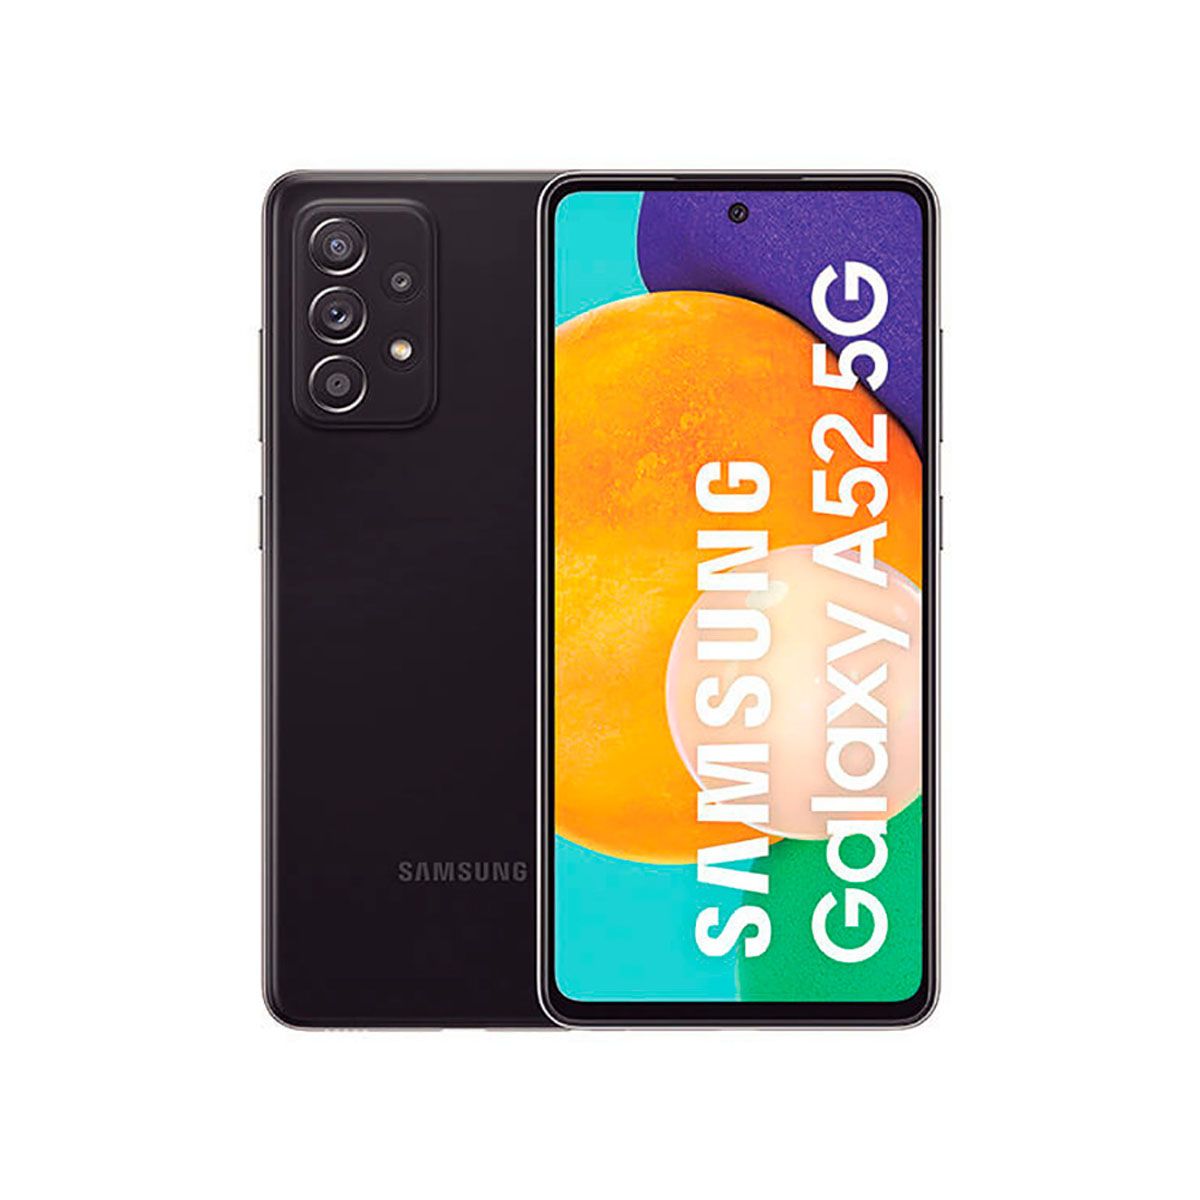 Samsung Galaxy A52 5G 6GB/128GB Black (Awesome Black) Dual SIM A526B